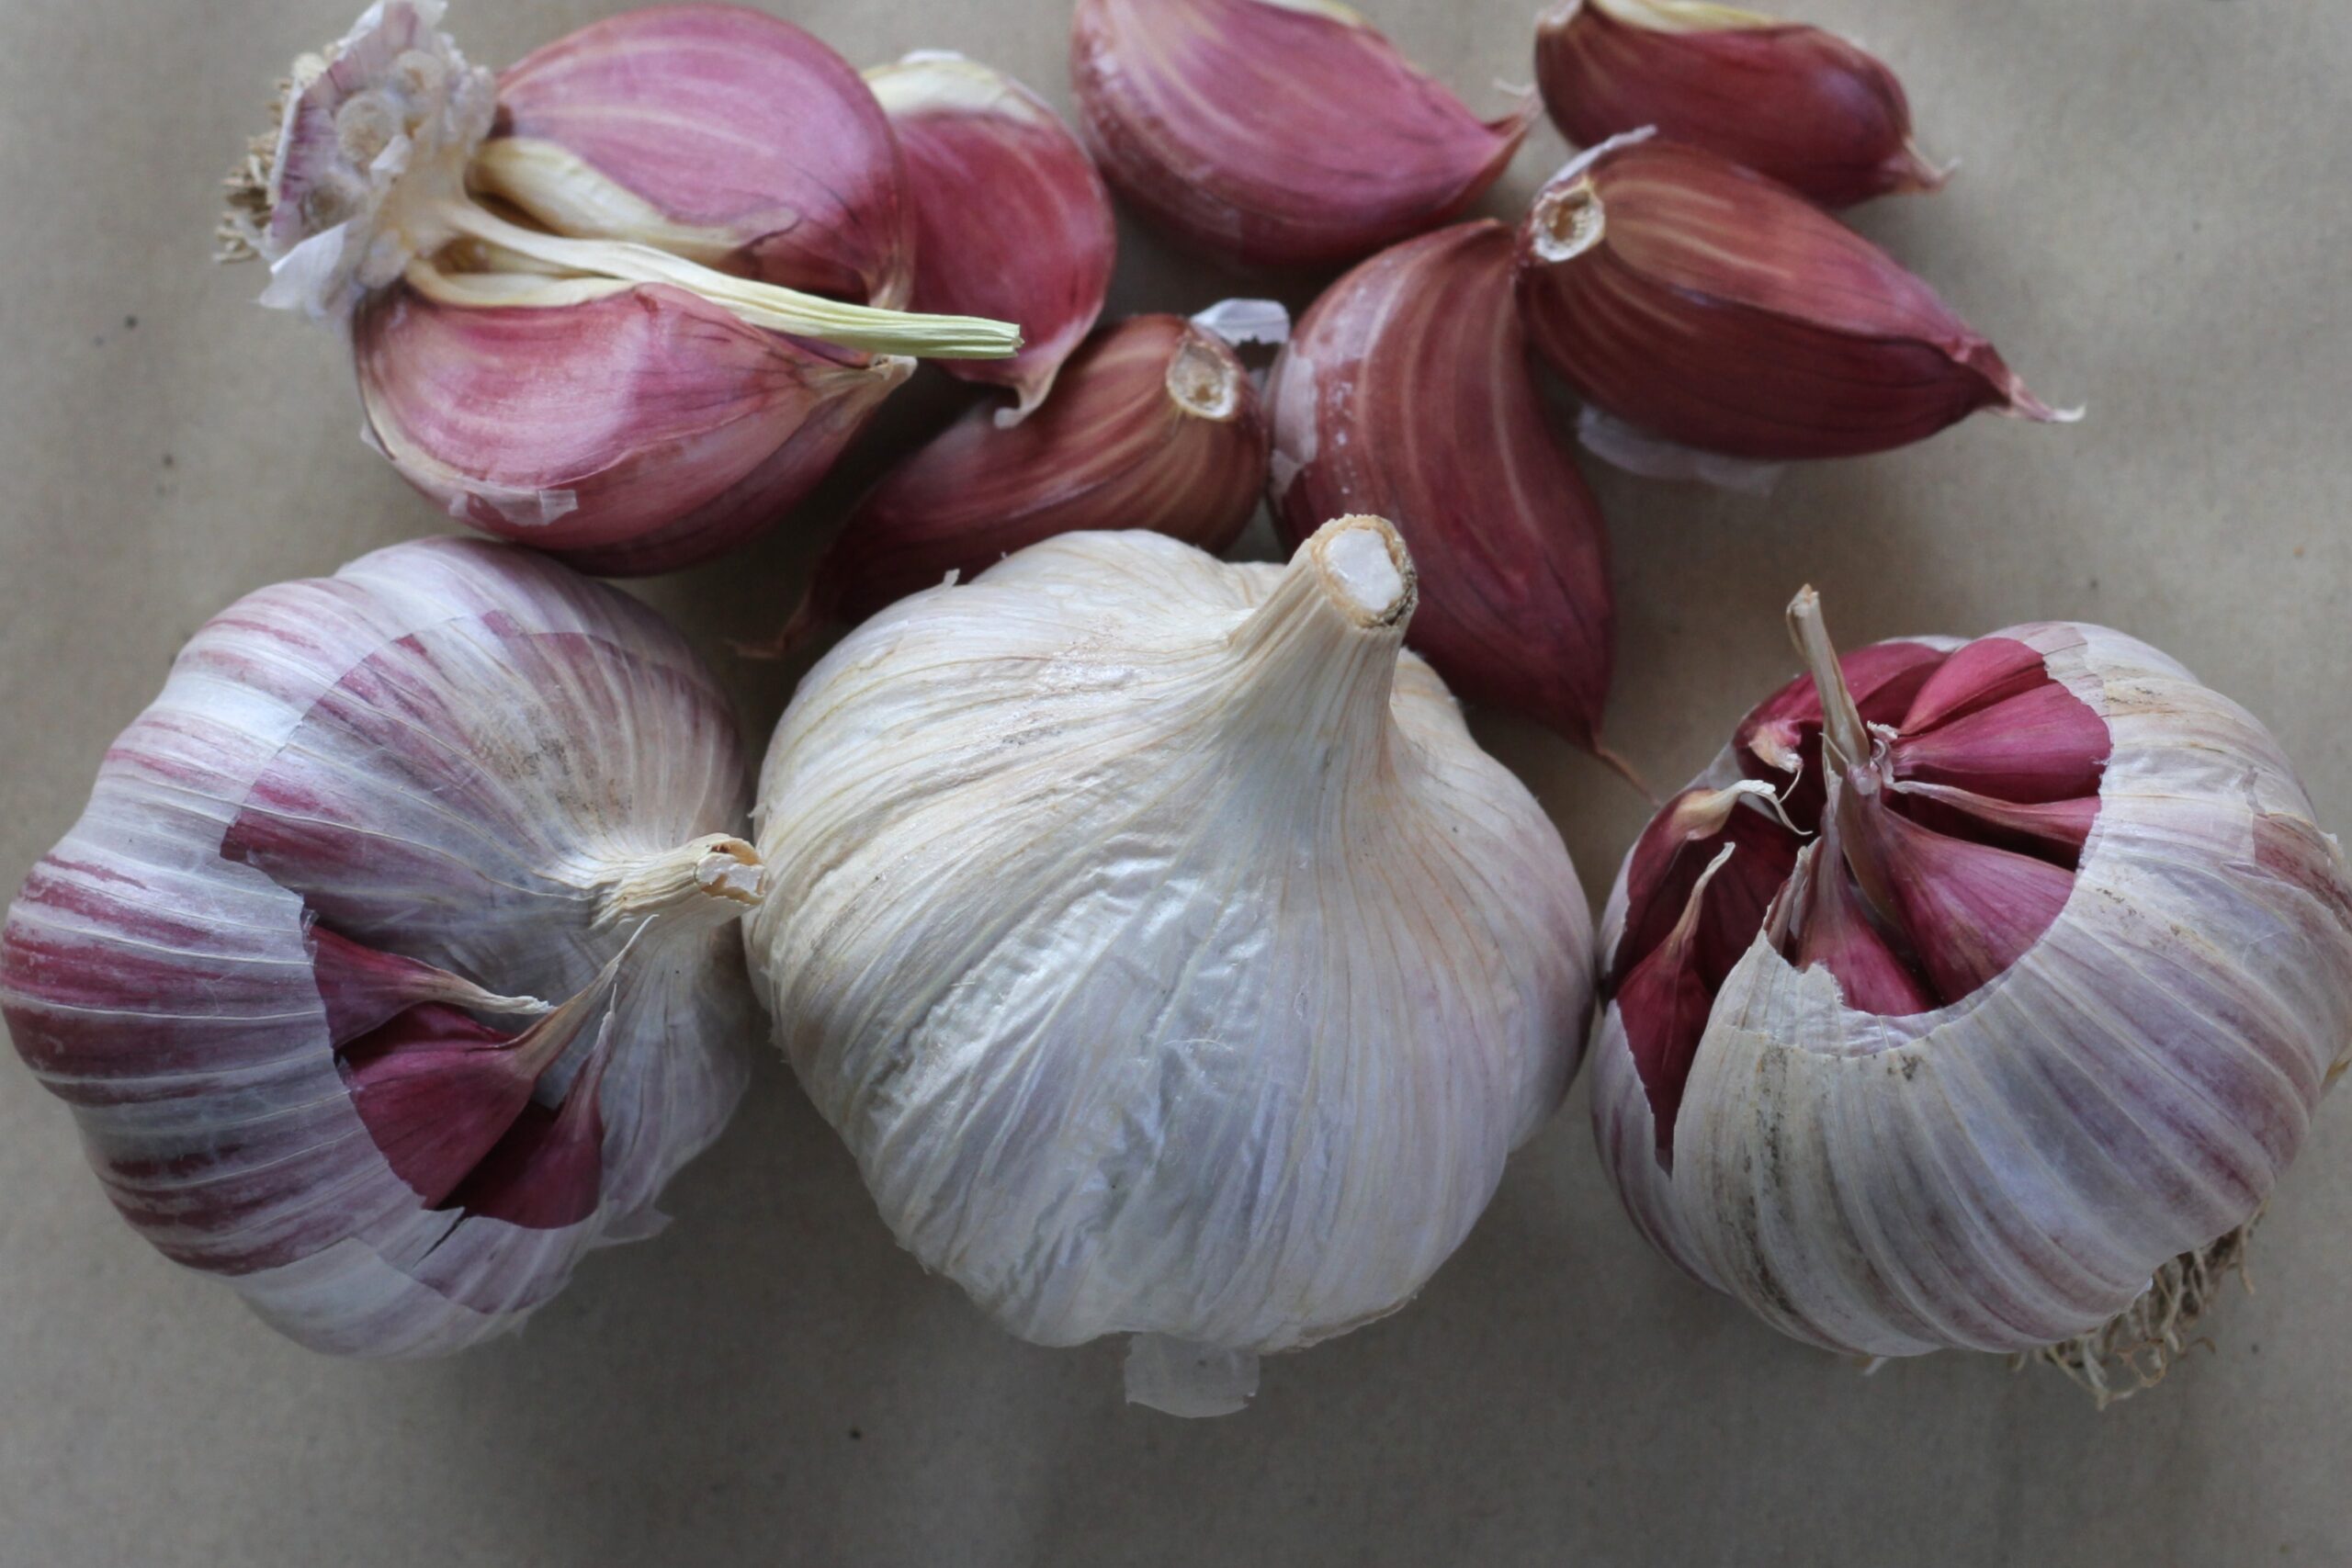 Storing garlic